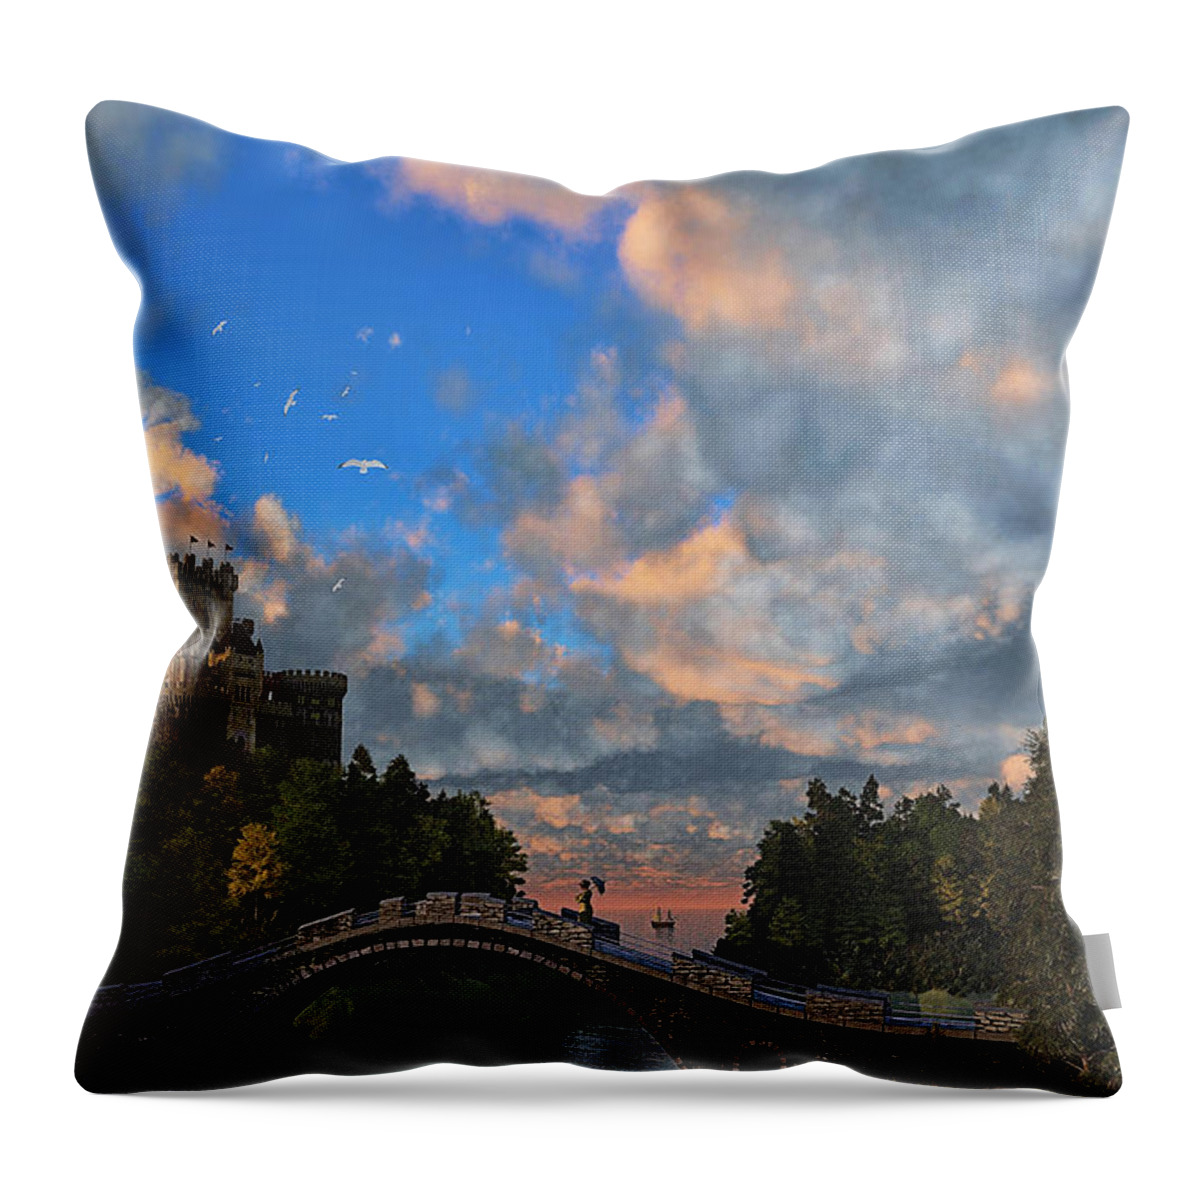 3d Render Throw Pillow featuring the digital art Far Away Place by Ken Morris